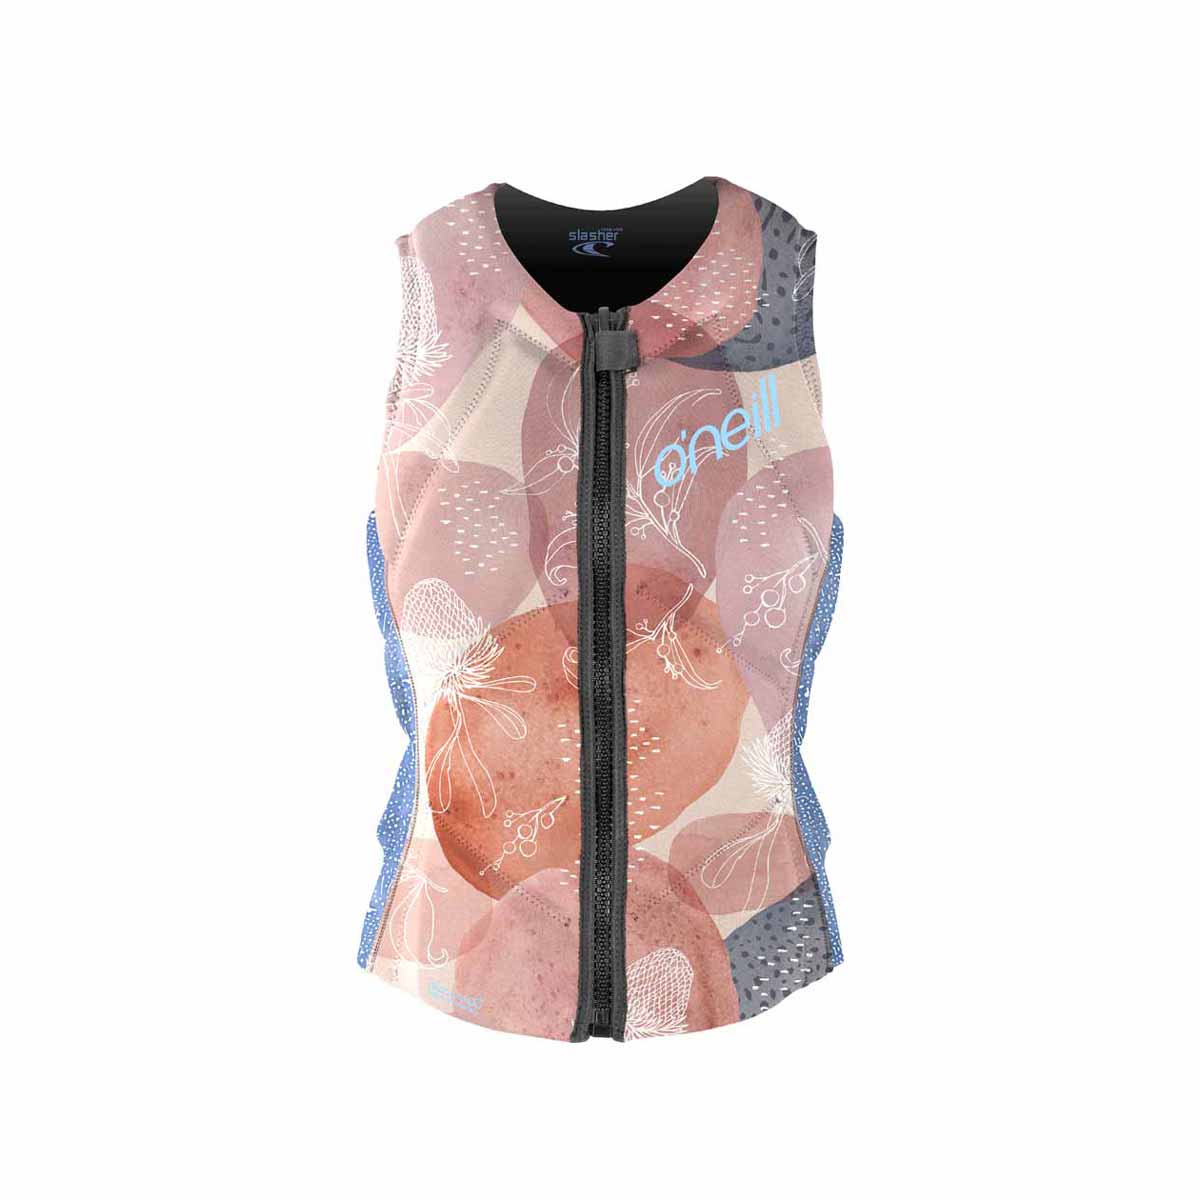 O'Neill WMS Slasher Comp Vest – Desert Bloom